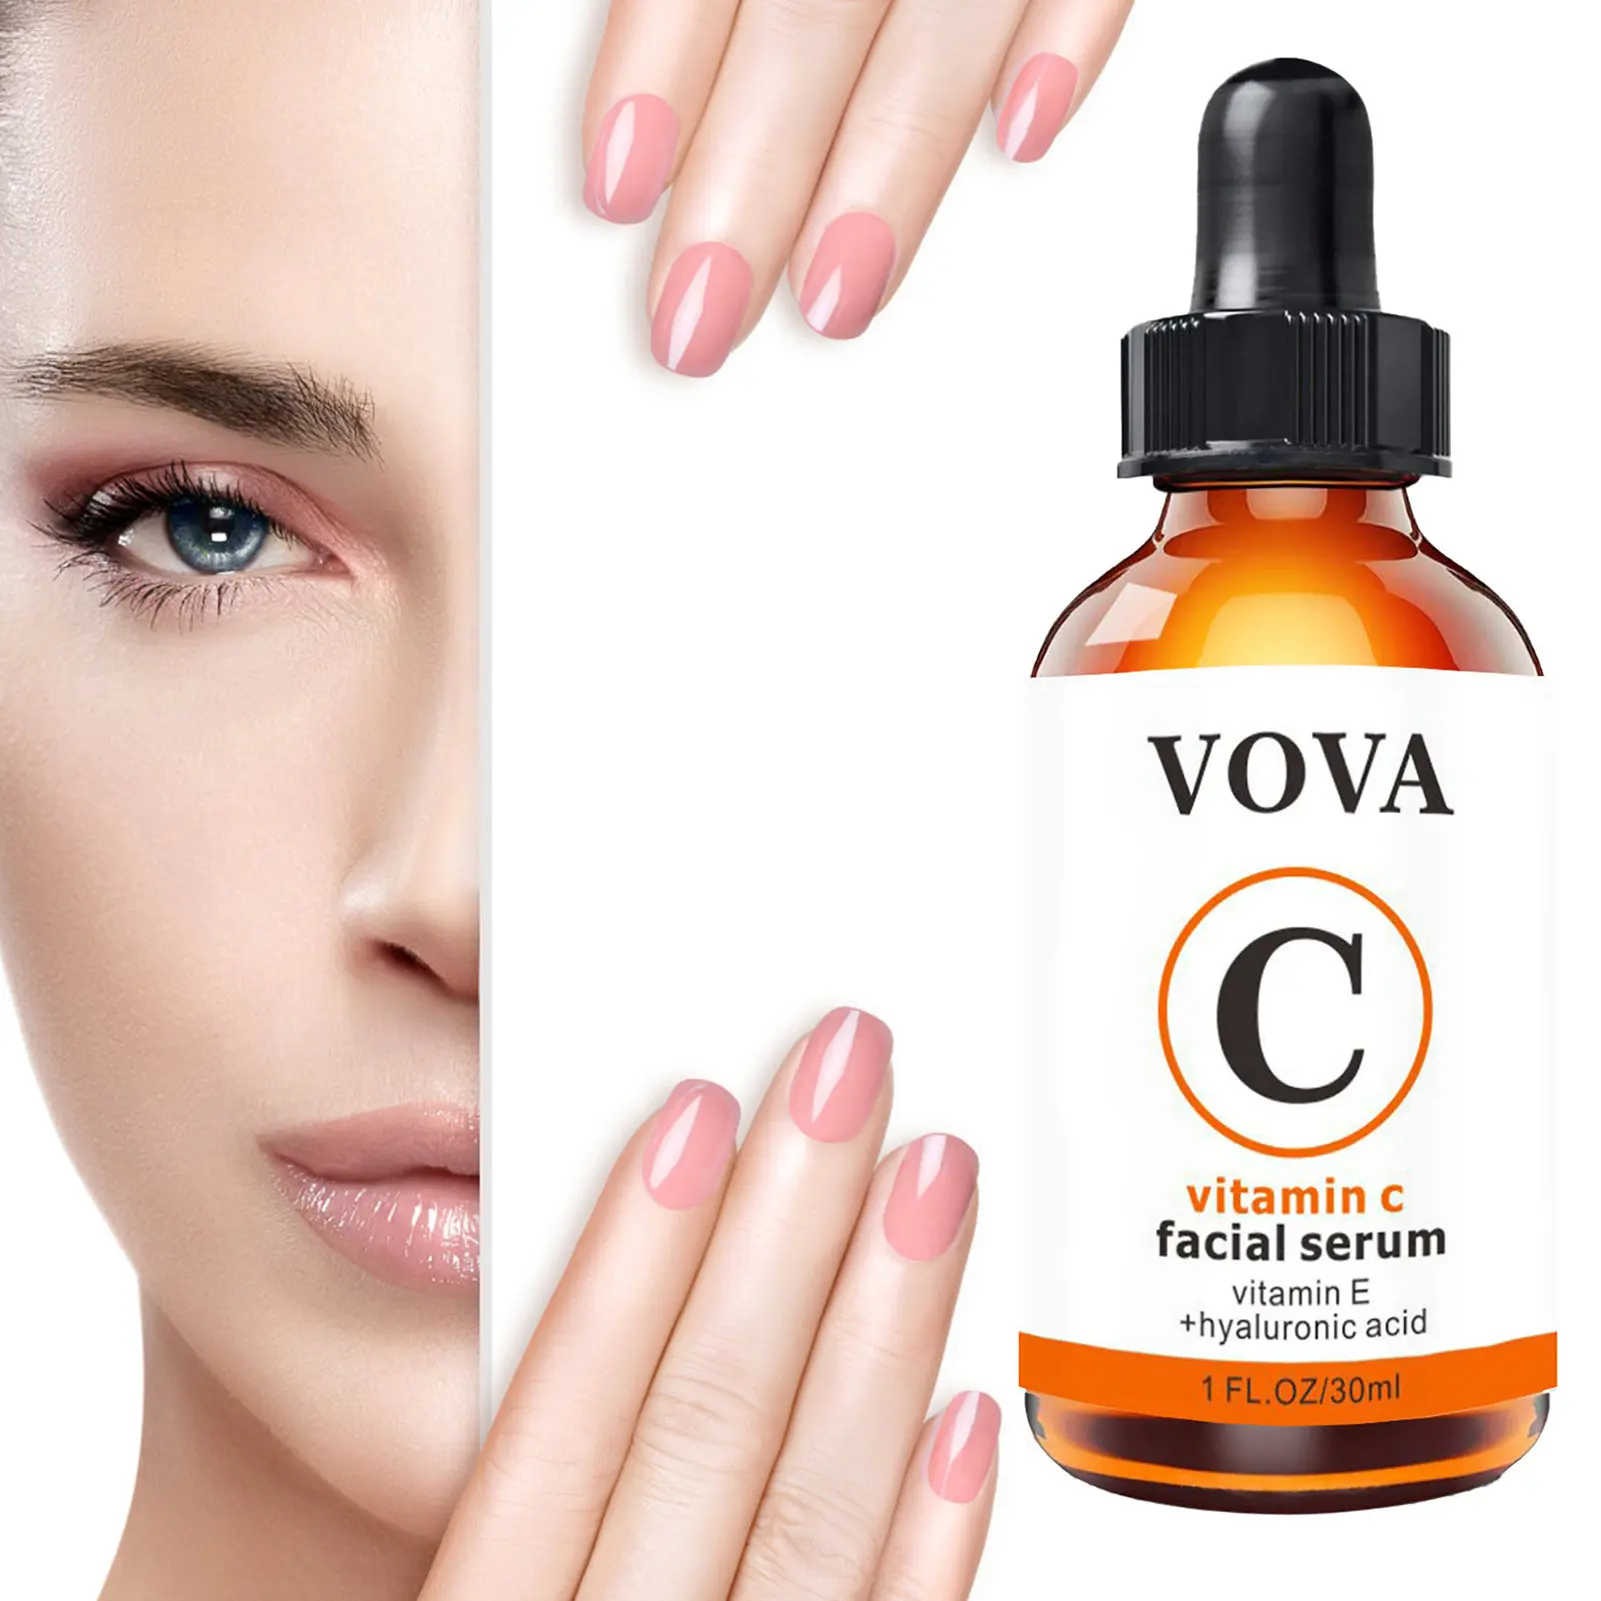 

Face Brightening Serum Vitamin C Serum Anti Aging Anti-Wrinkles Facial Serum Boost Skin Collagen Hyaluronic Facial Serum 1 FL Oz